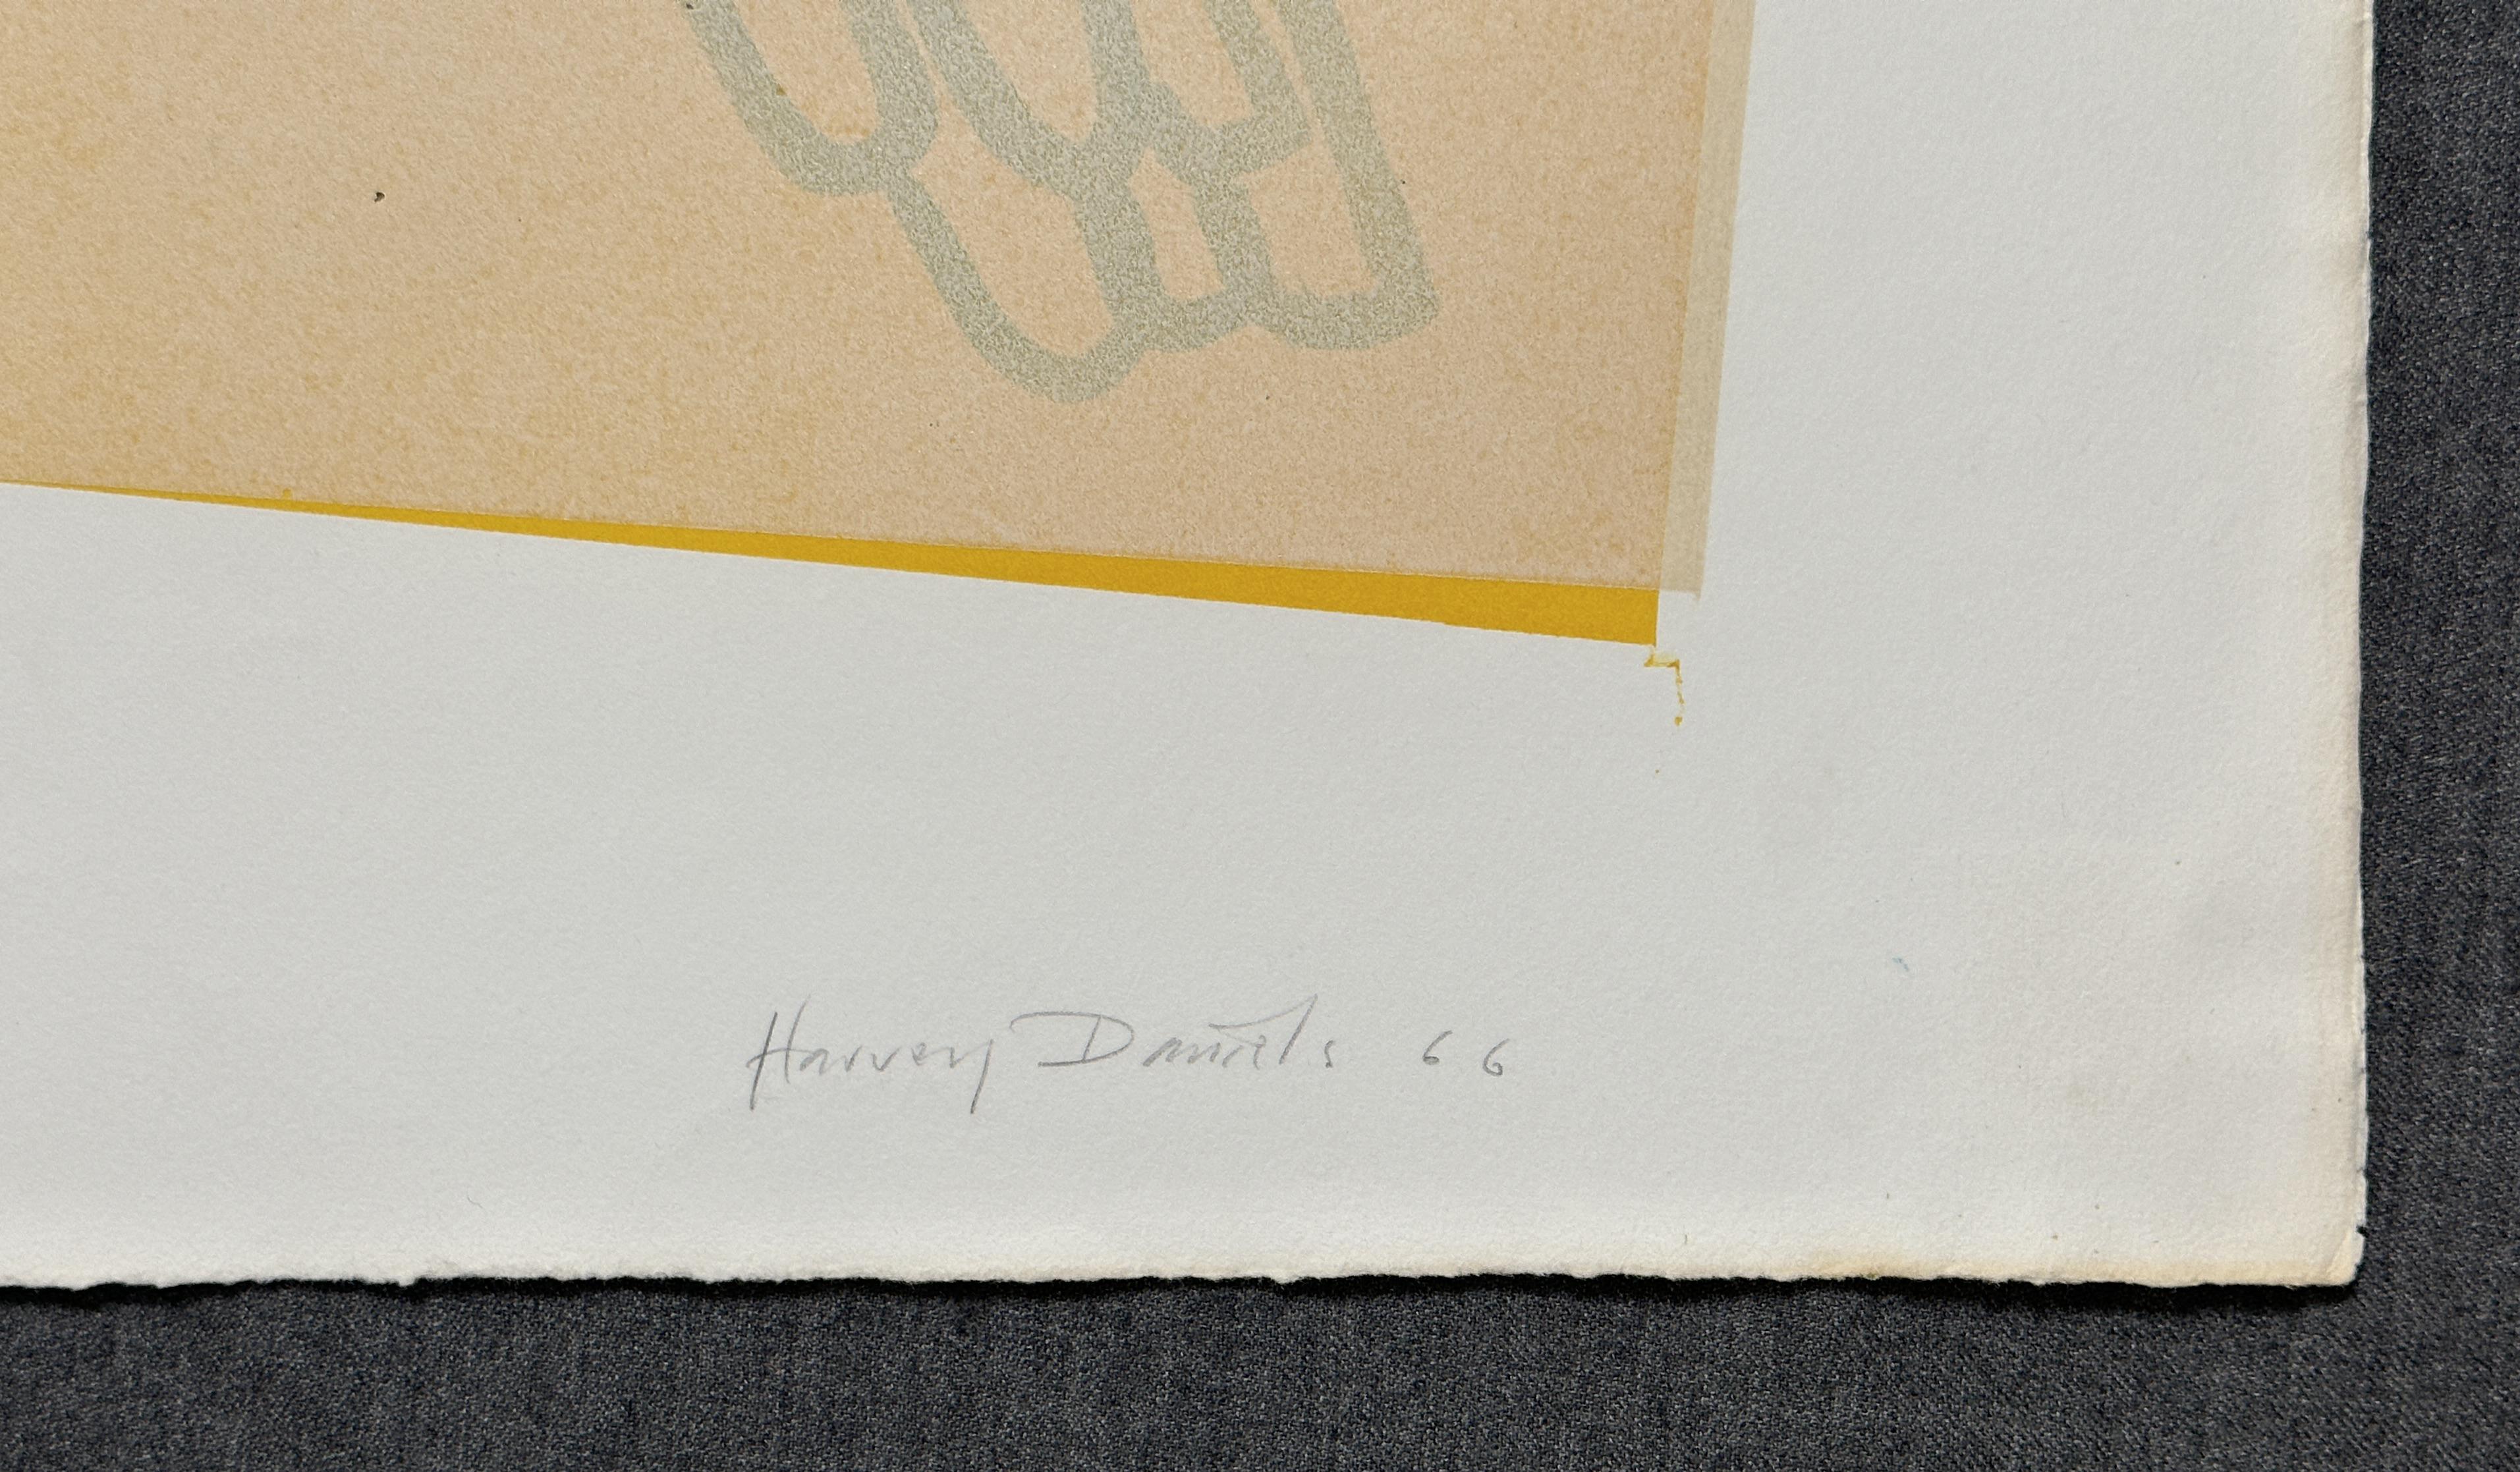 Two Parrots 1966 Original Signed Lithograph Pop Art - Print by Harvey Daniels